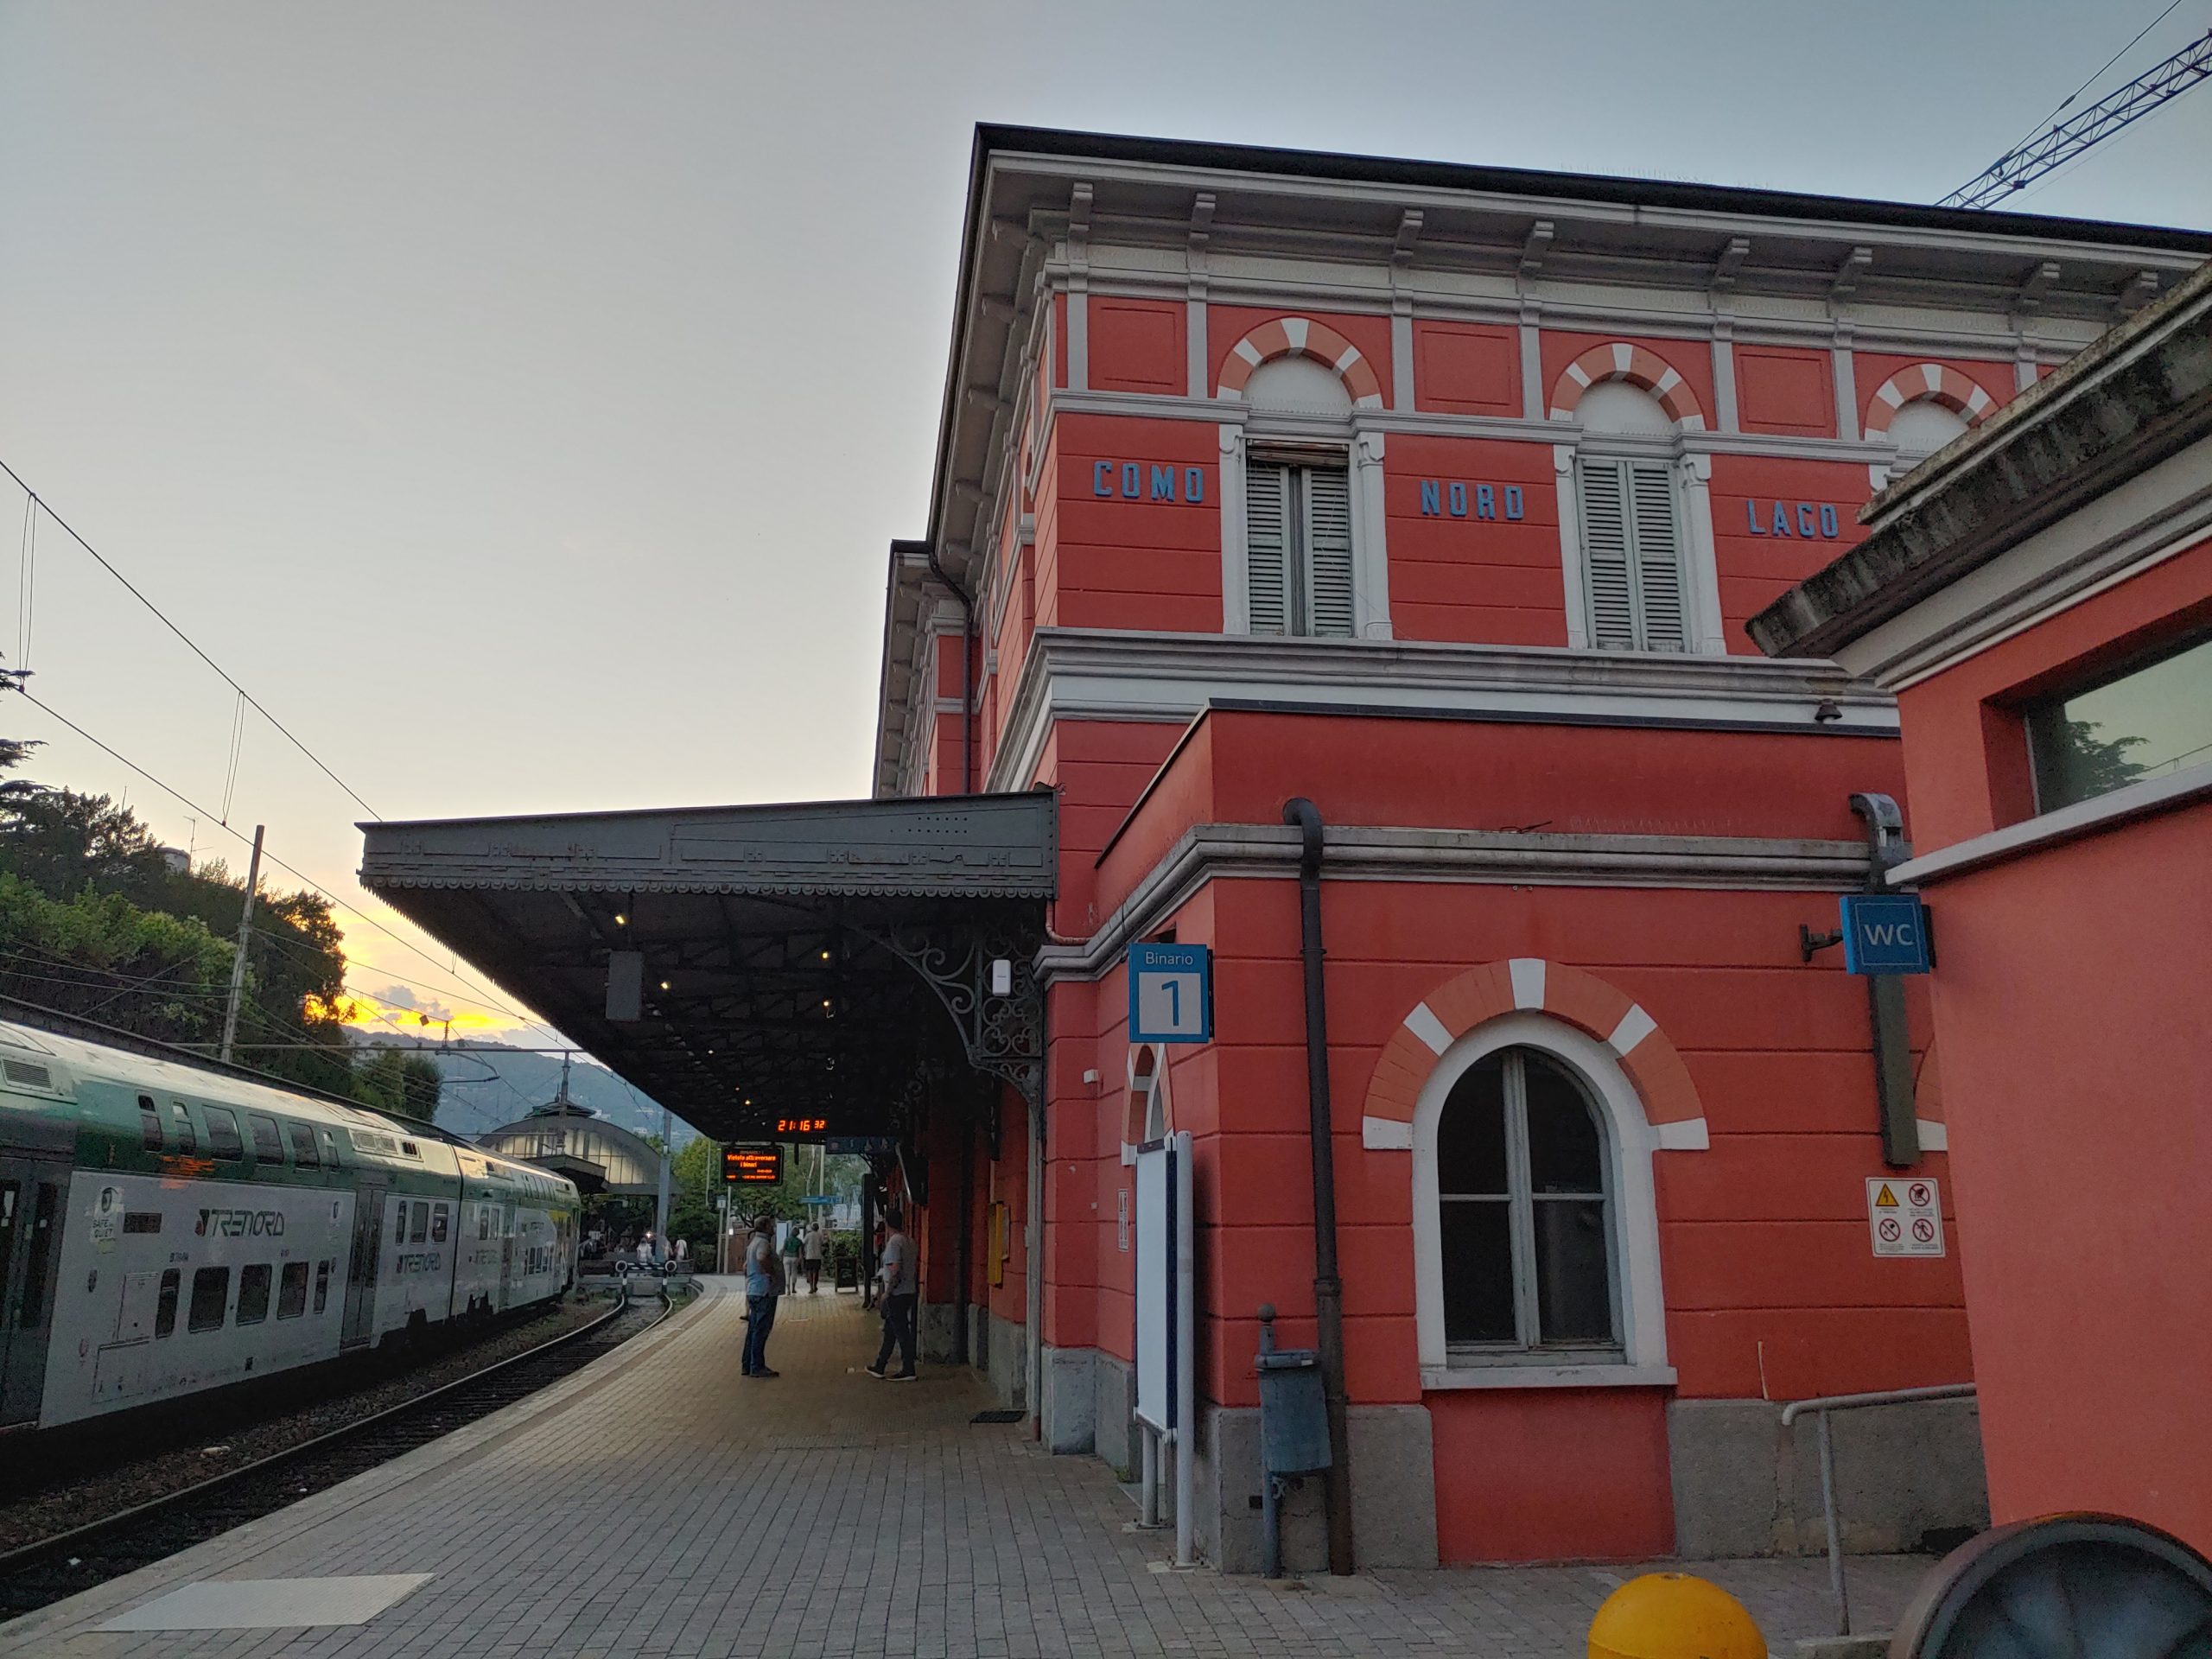 Como Nord Lago station